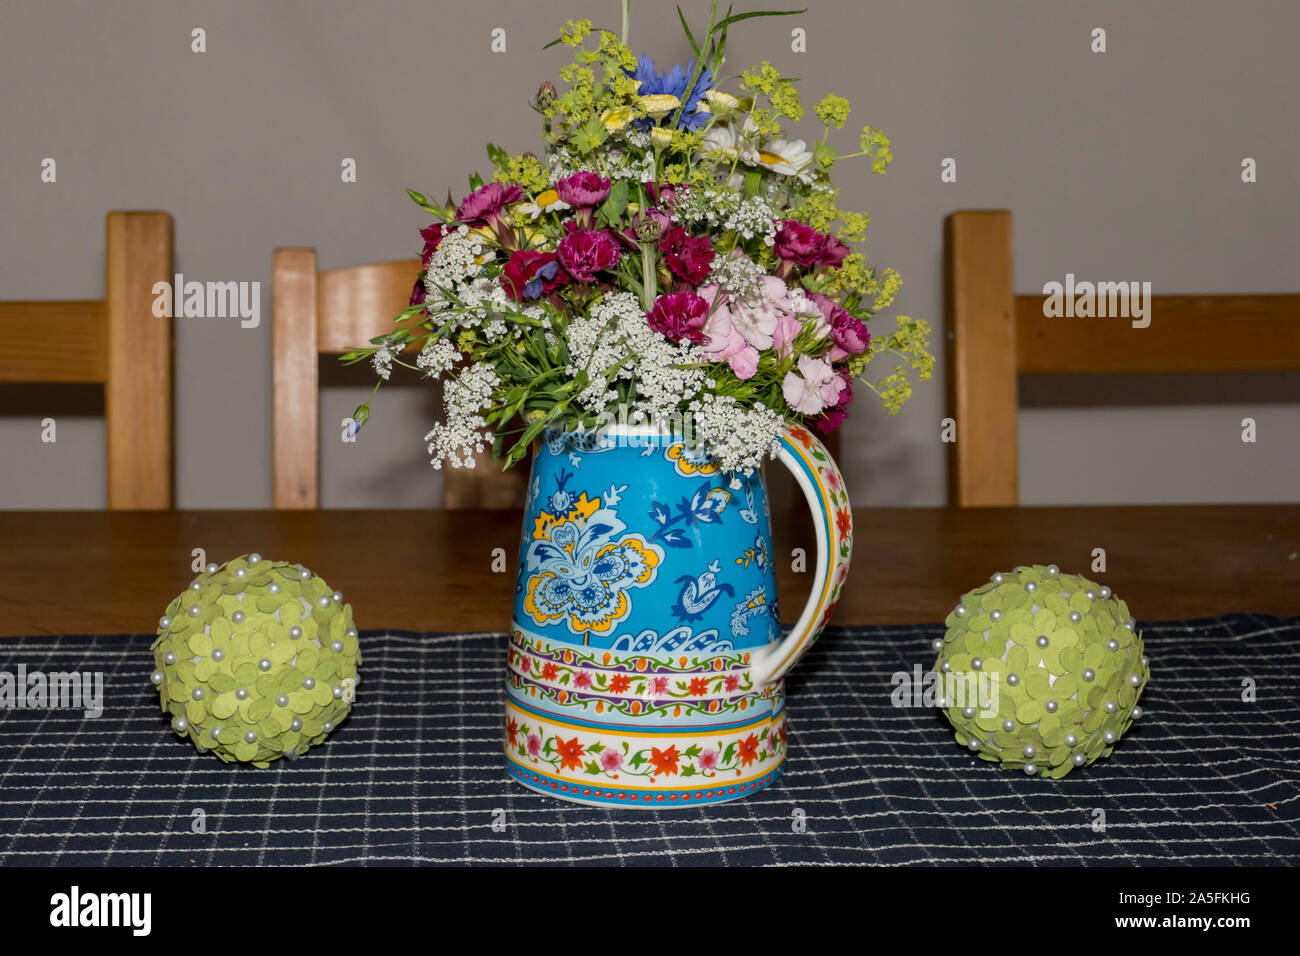 Blumenstrauß mit Rosen und Wiesenblumen festlich arrangiert Foto Stock